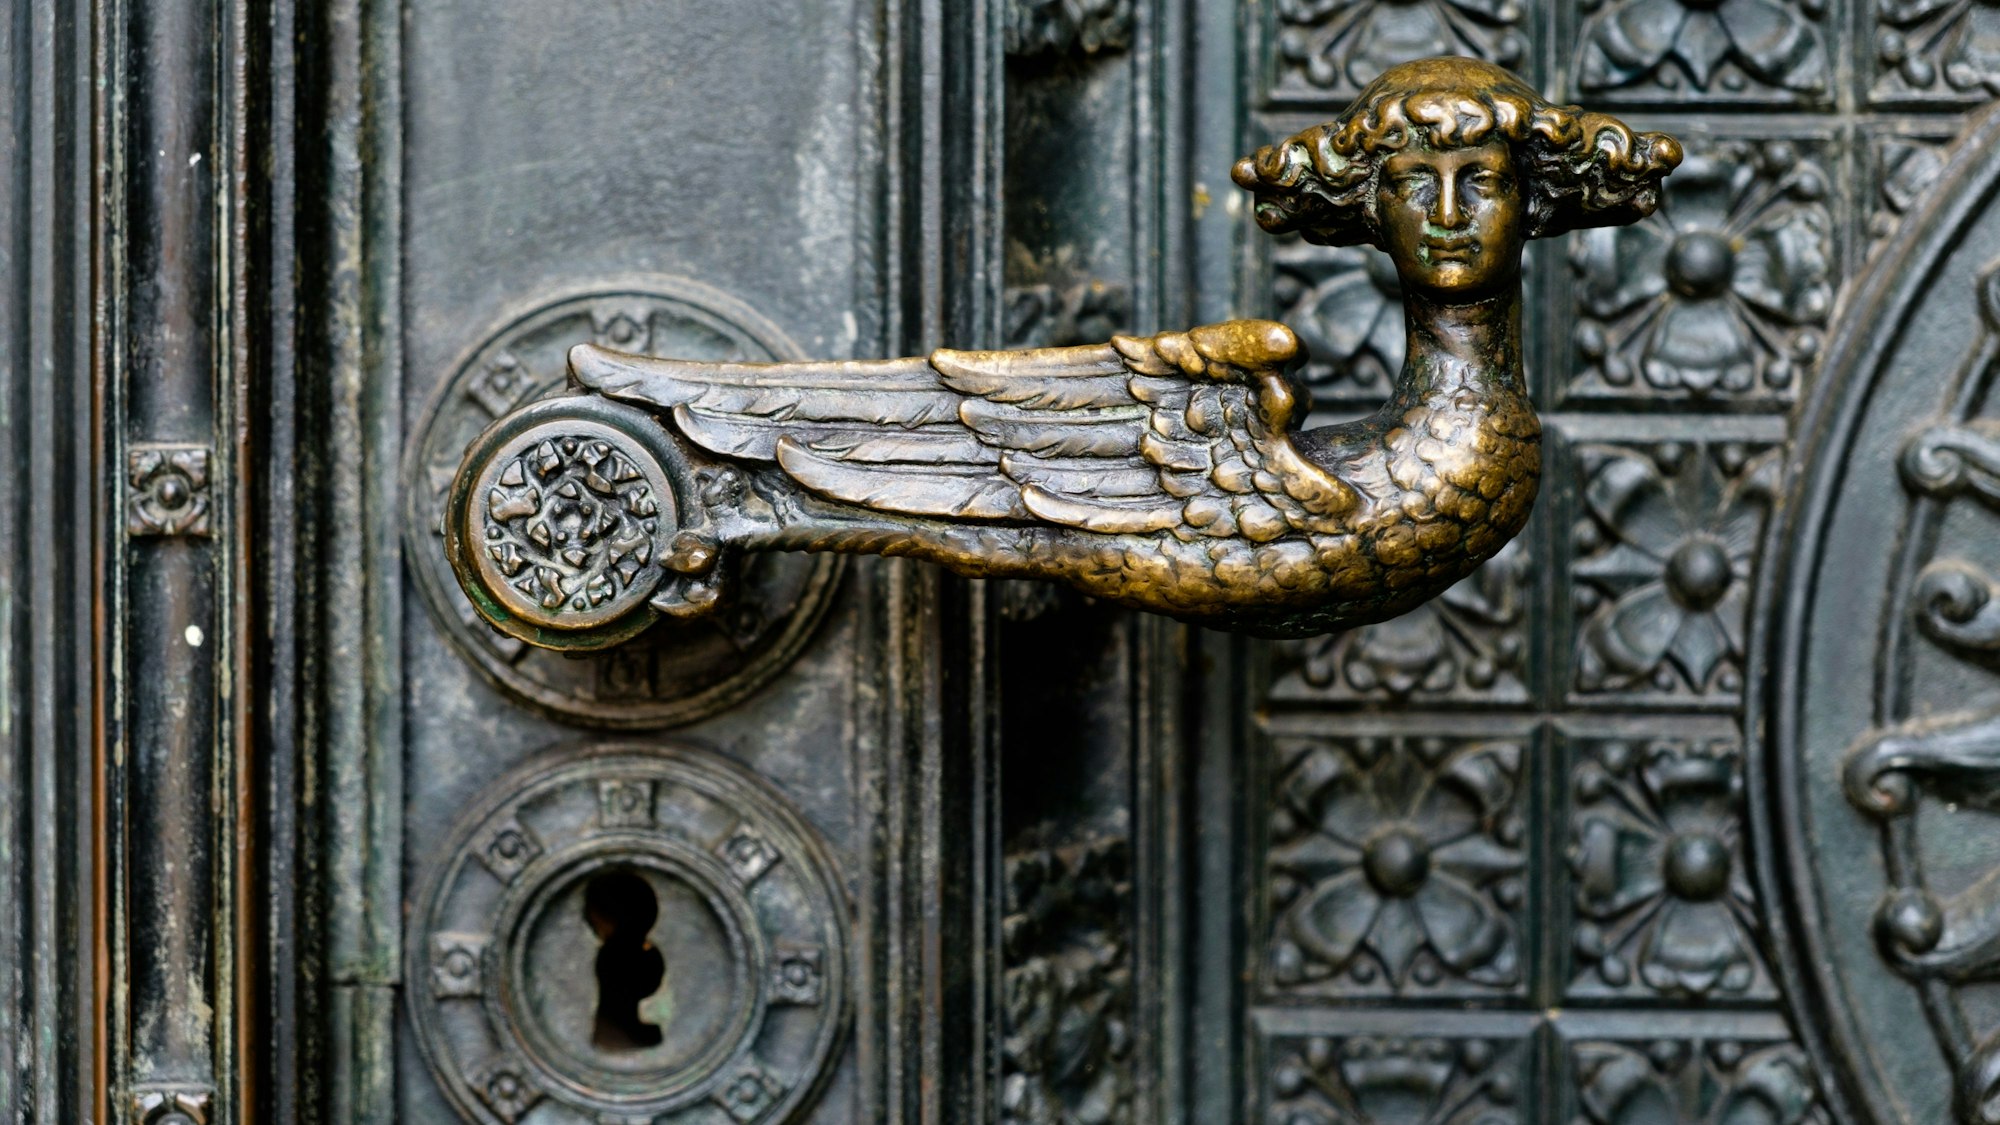 Das Bild zeigt einen bronzenen Türgriff in Form eines Engels mit Lockenkopf am Kölner Dom.